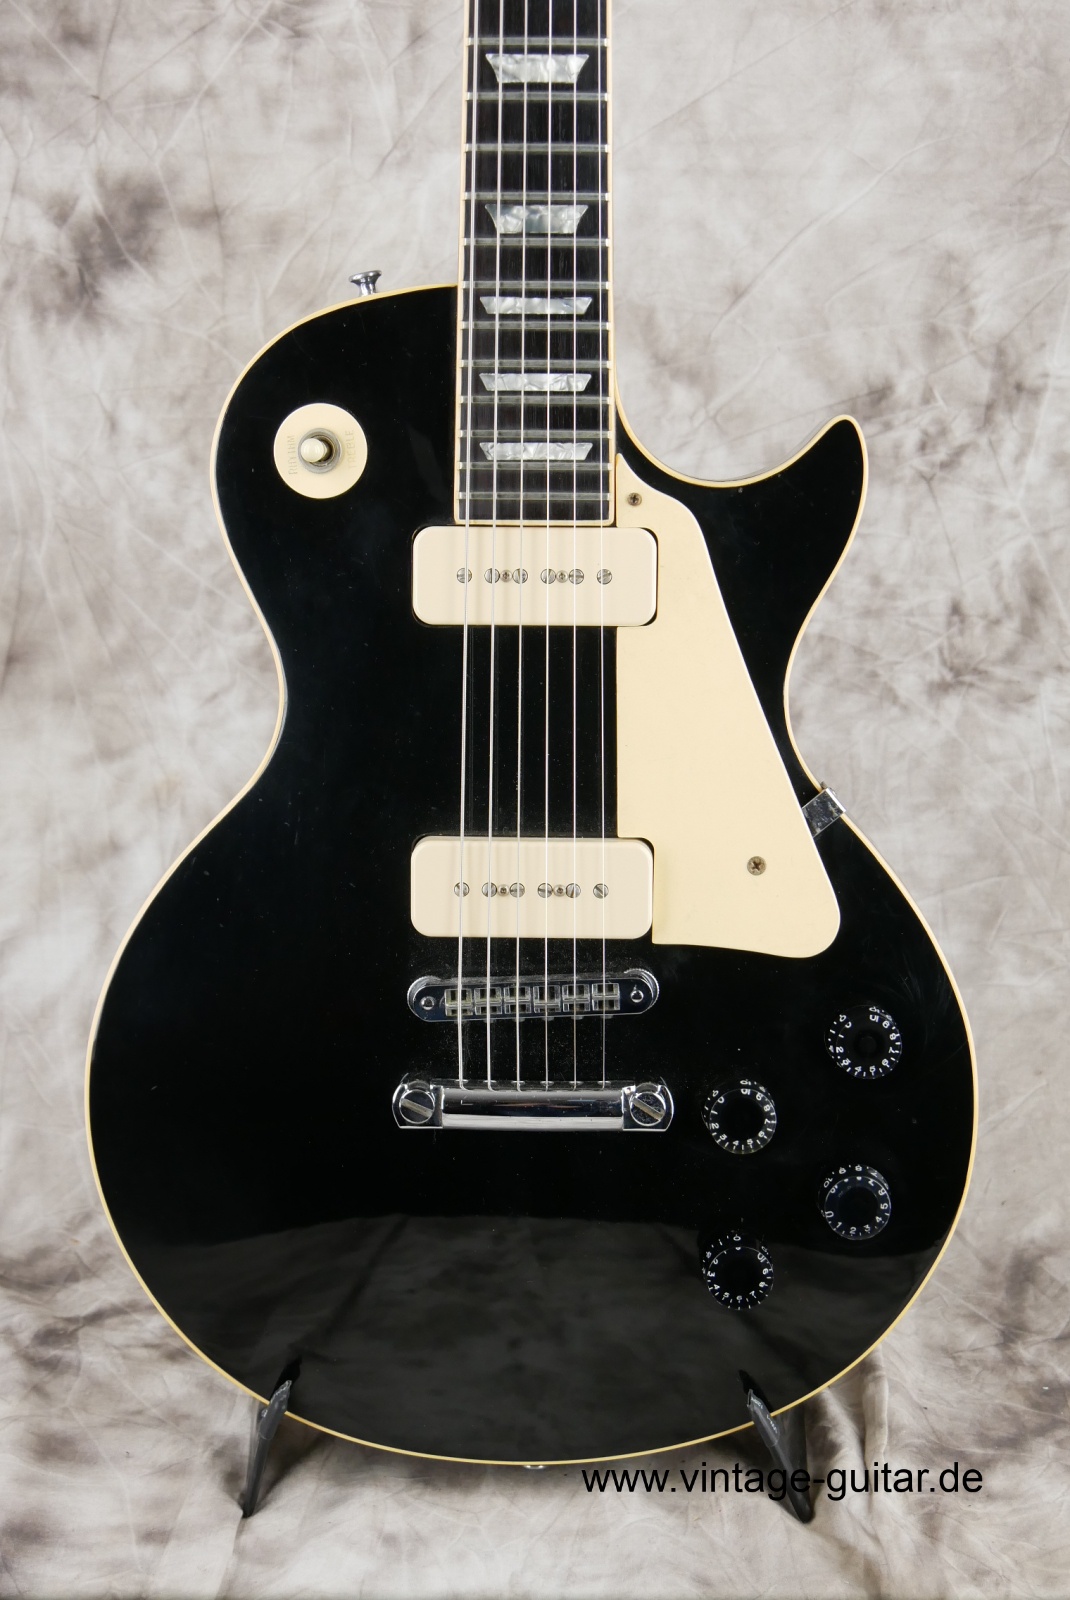 Gibson_Les_Paul_Pro_Deluxe_black_1979-007.JPG